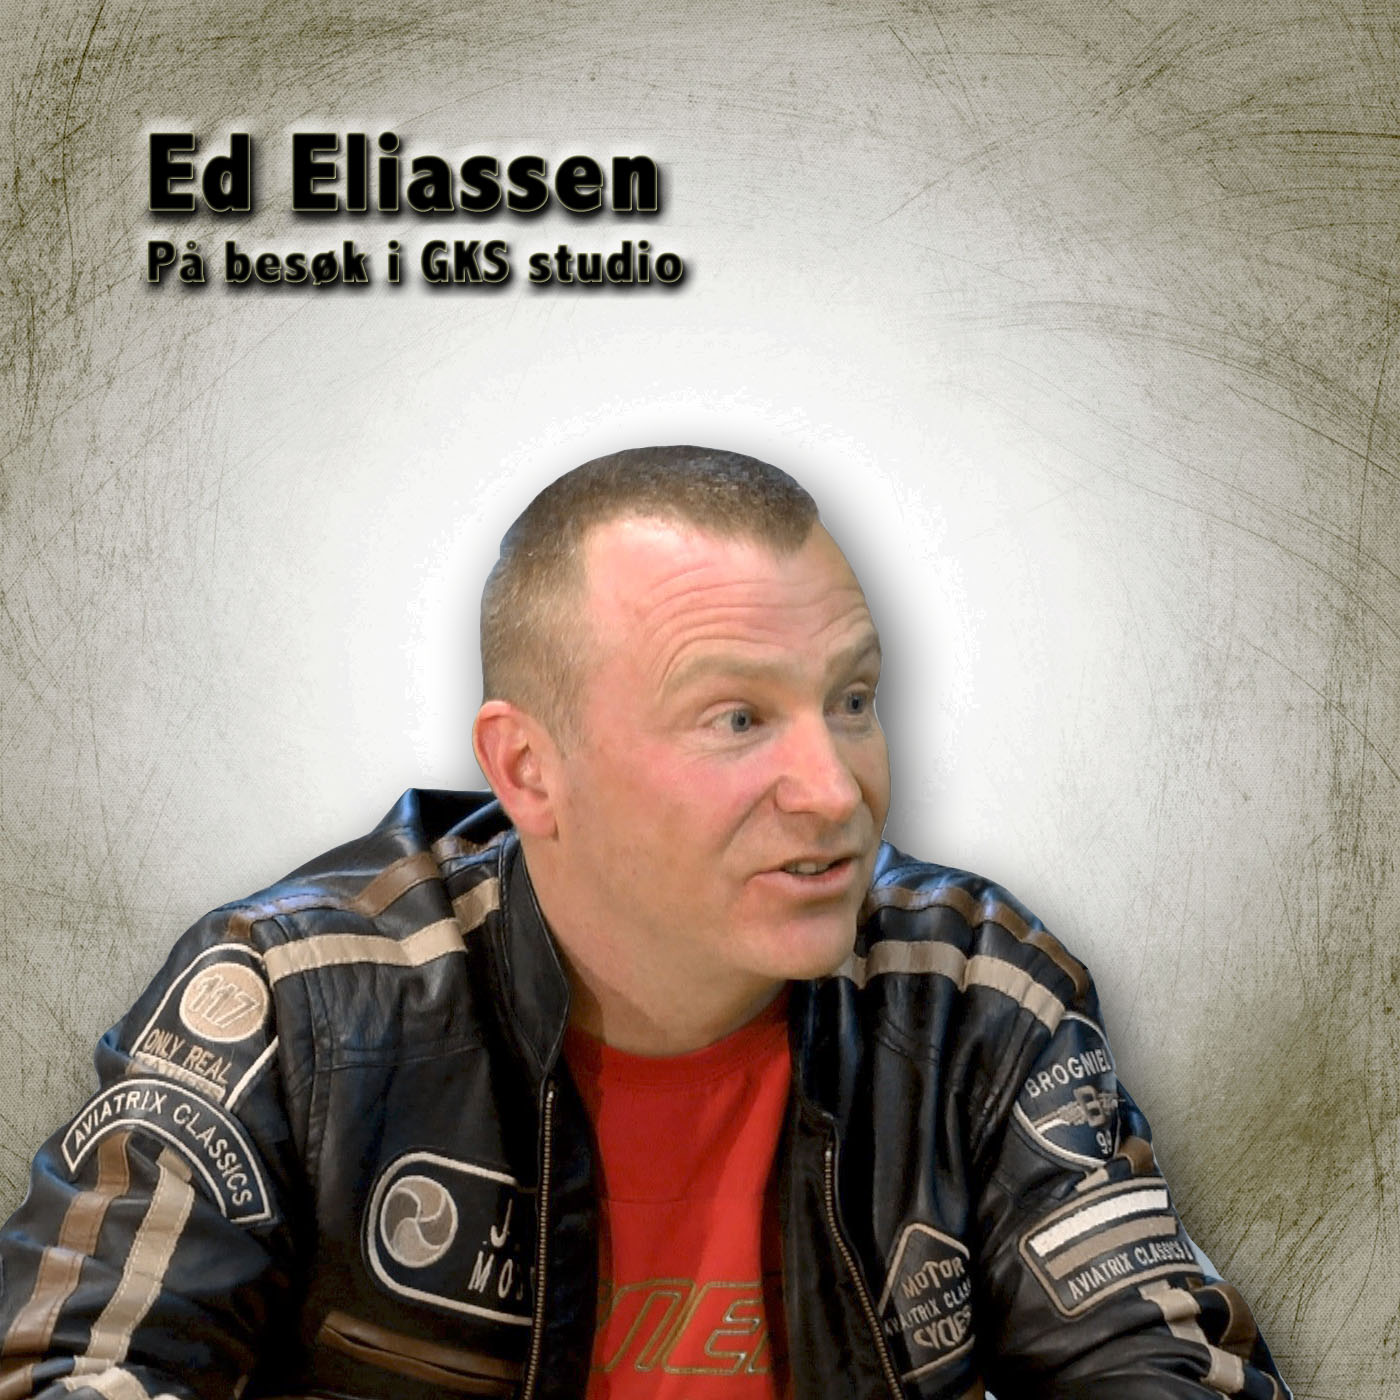 Ed Eliassen